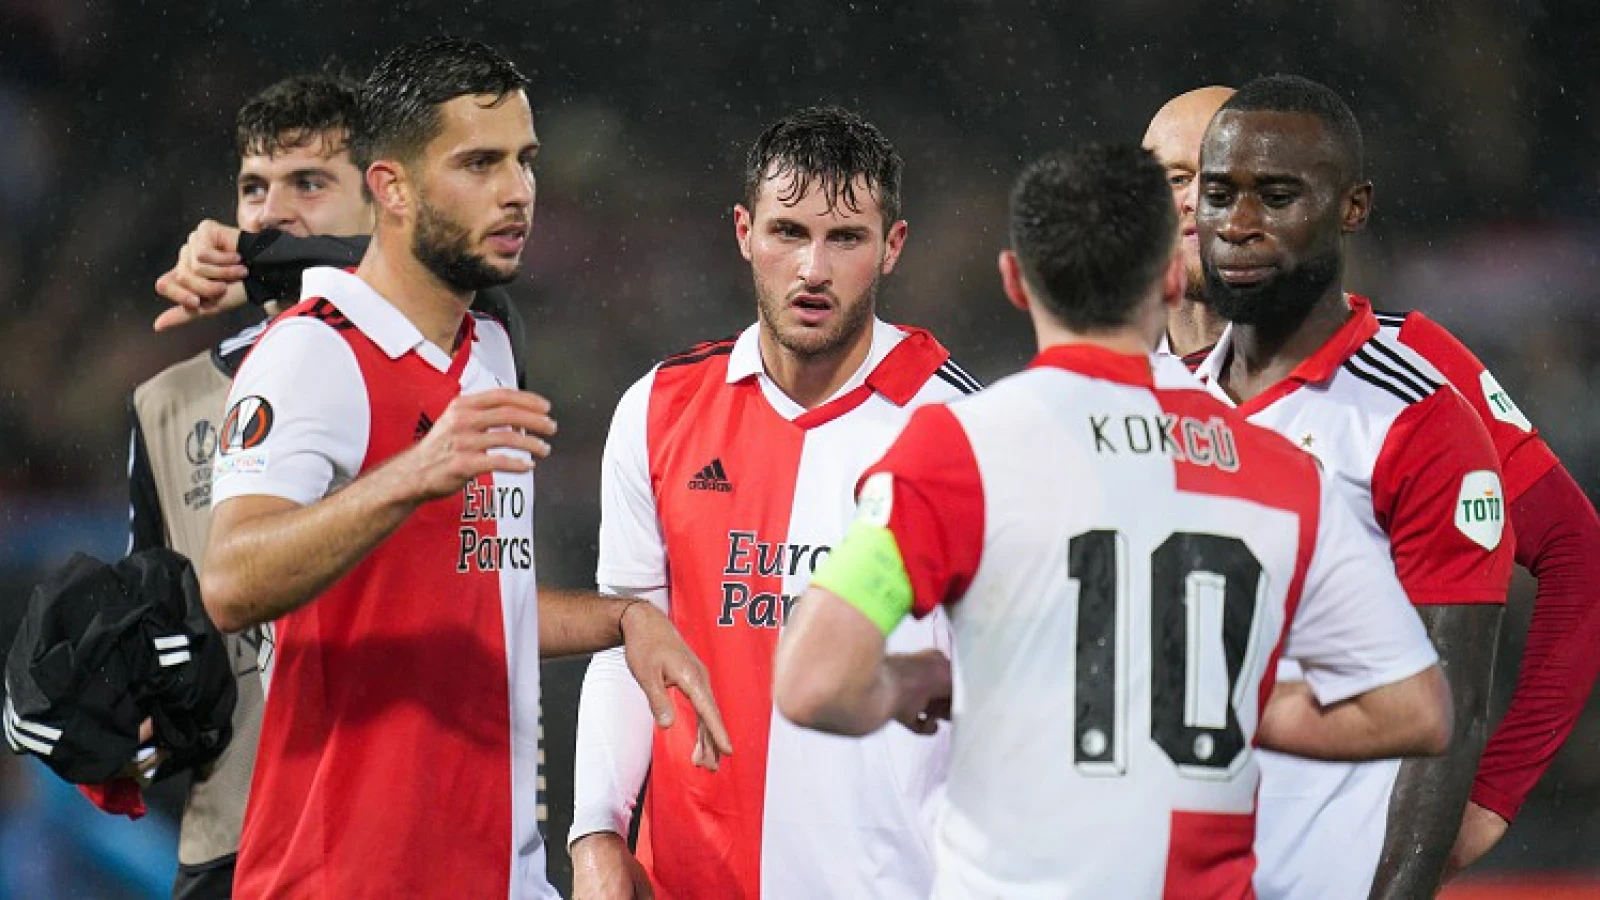 Mirror: 'Manchester United richt pijlen op Feyenoord-duo'